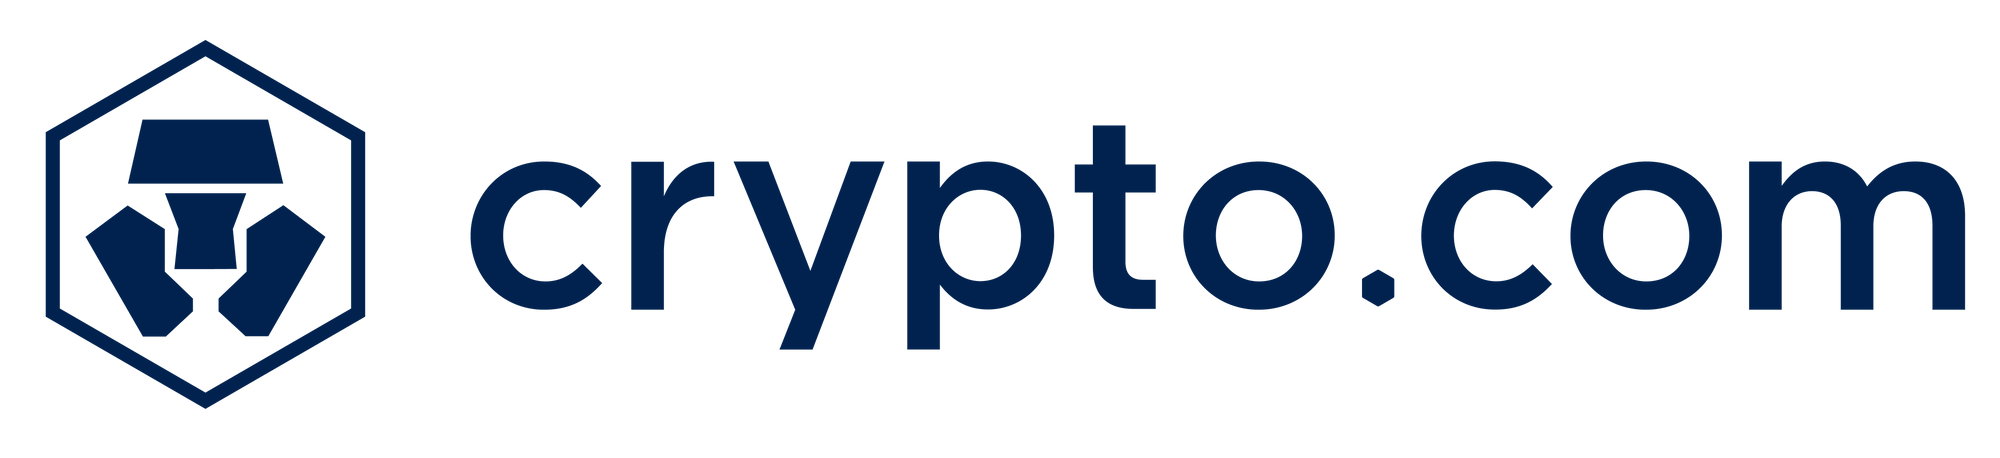 crypto_com.png